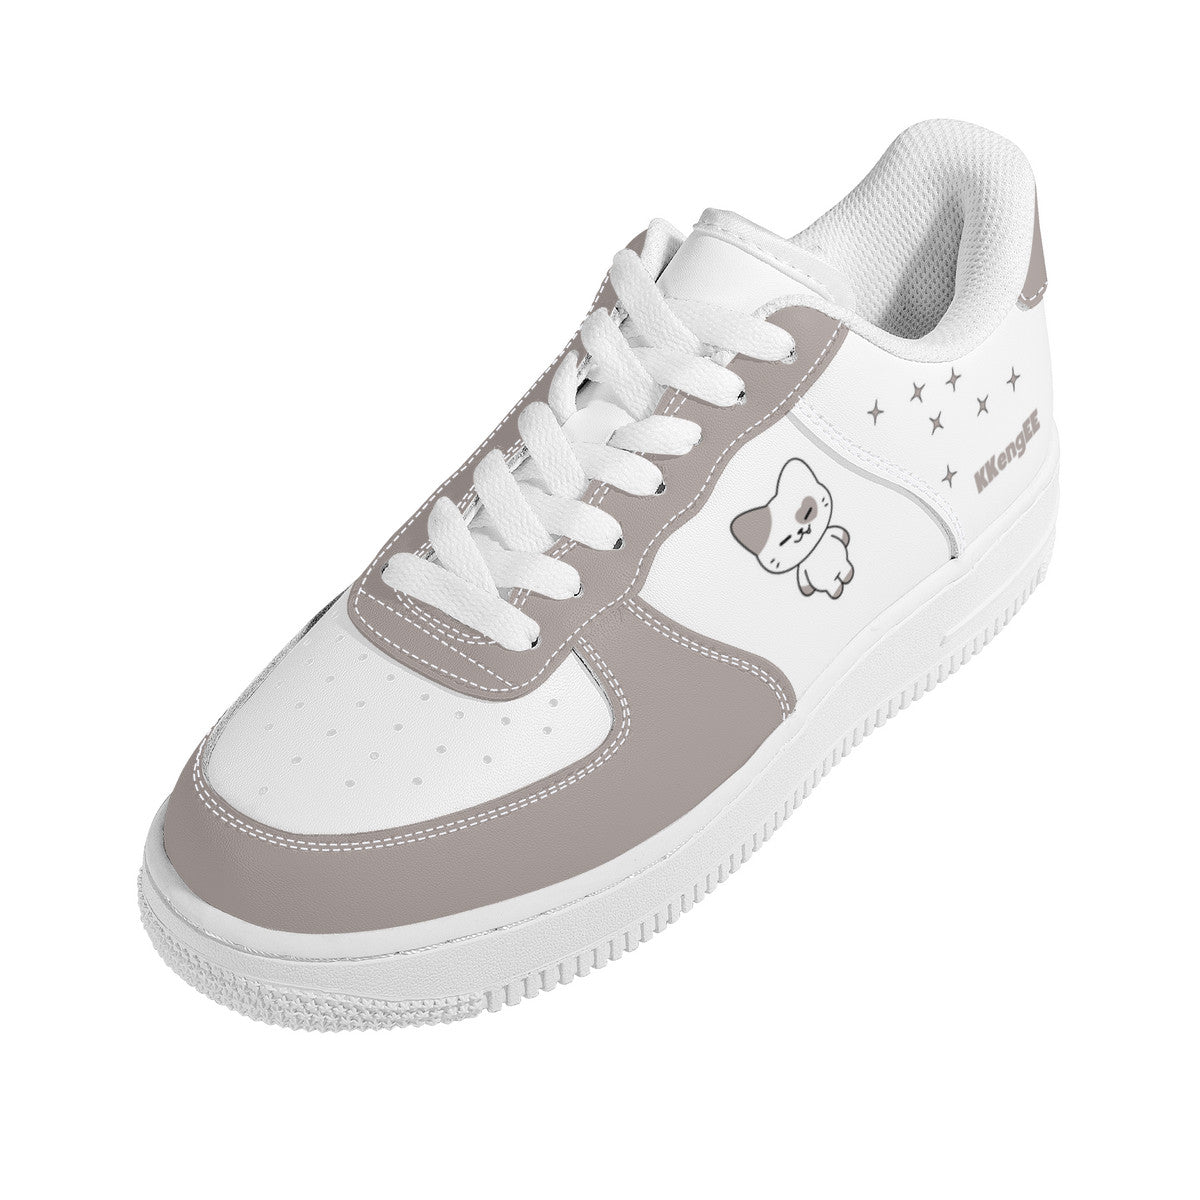 Itzy Yeji Sneakers - Twinzy KKengEE  Low Top Unisex Sneaker